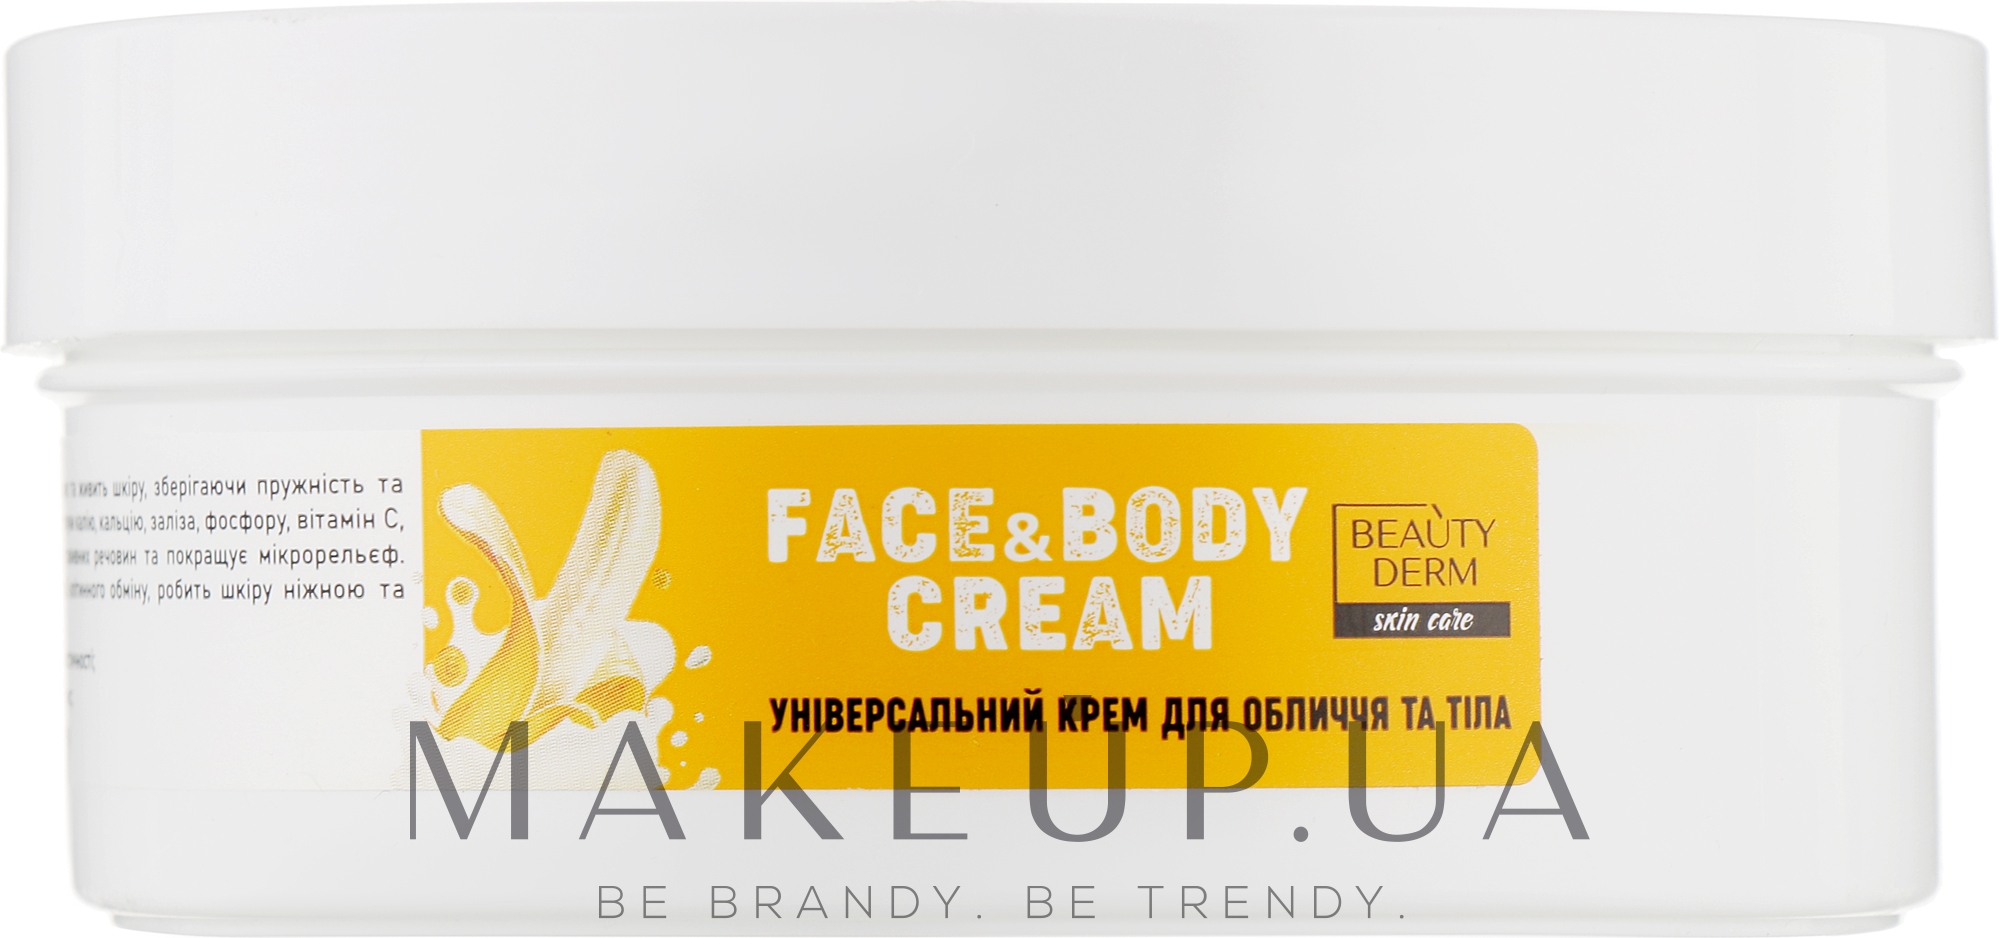 Універсальний крем для обличчя й тіла - Beauty Derm Soft Touch Face s Body Cream — фото 250ml